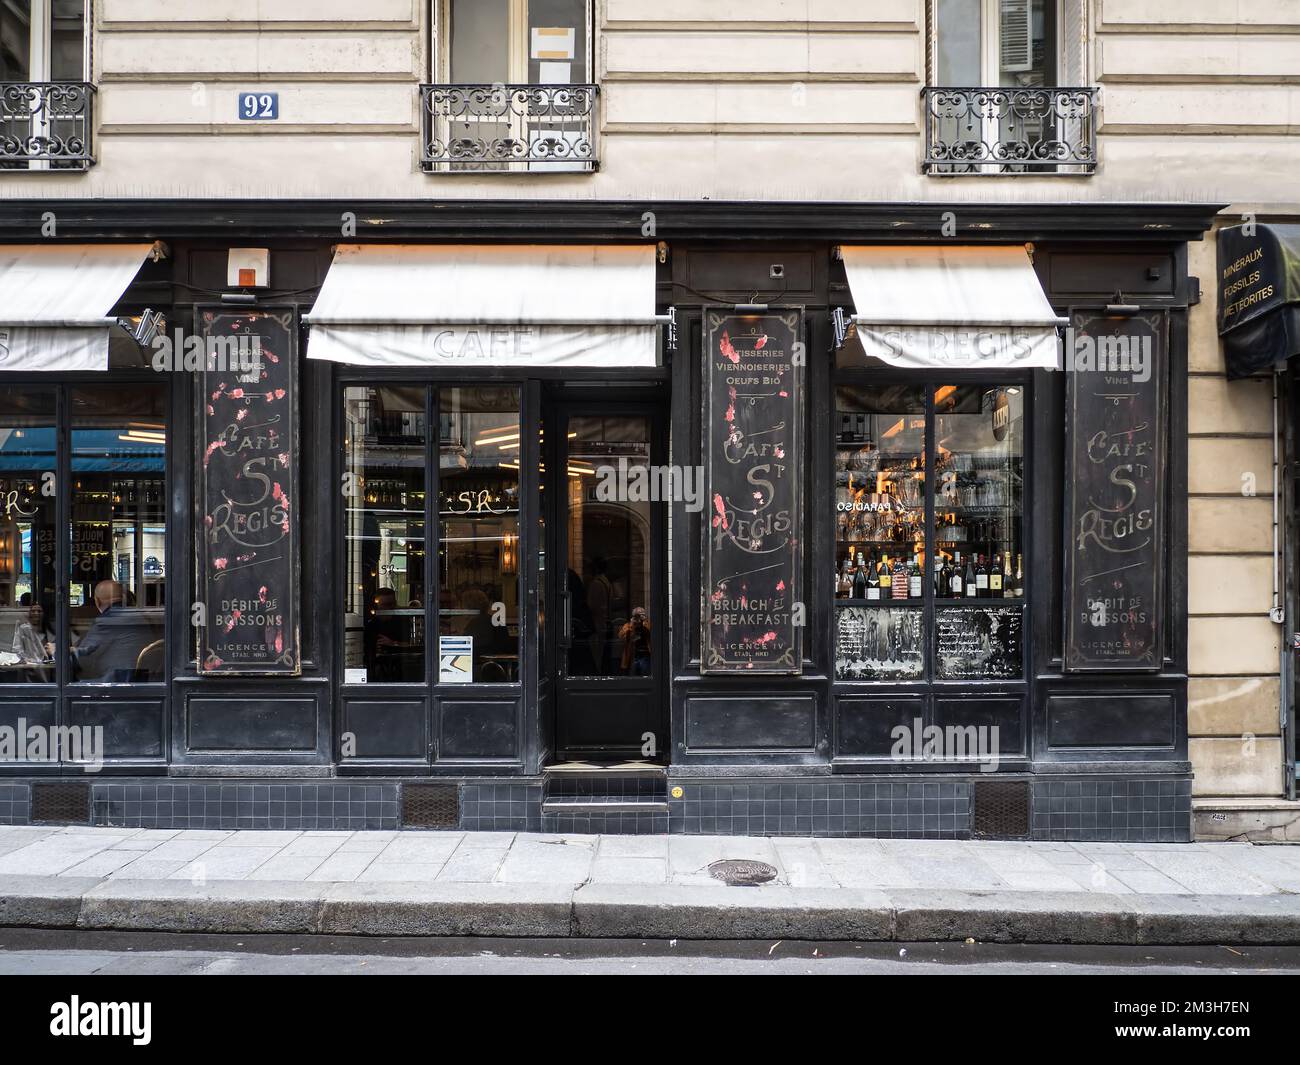 Cafe St. Regis, Paris, France Stock Photo